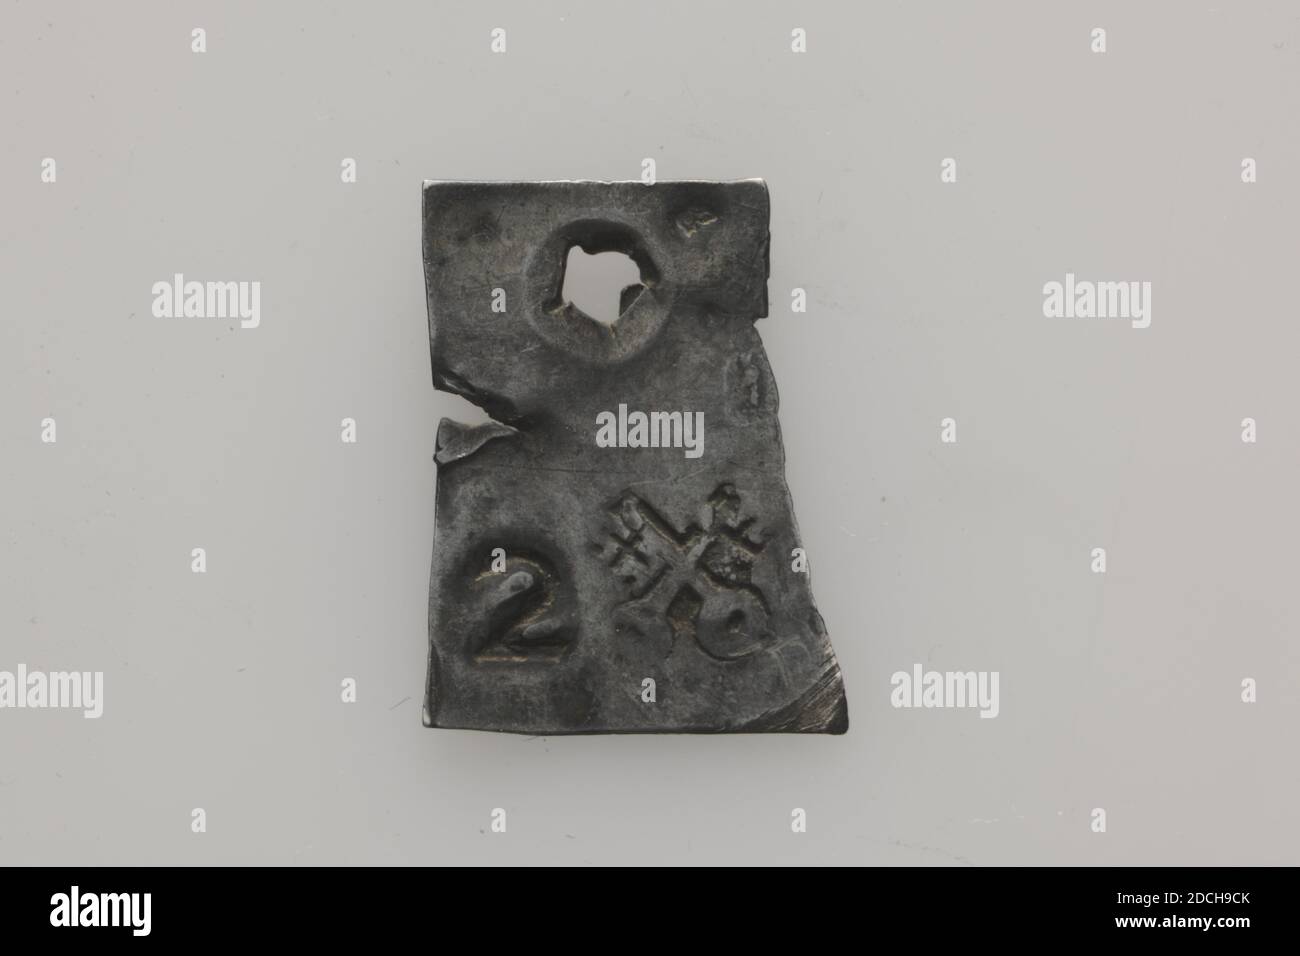 Silber, Anonym, 16. Jahrhundert, geprägt, Allgemein: 1.8 x 1.4 x 0,1cm 18 x 14 x 1mm, Gewicht: 0,5g, Stadtwappen, Leiden, 1907 Stockfoto